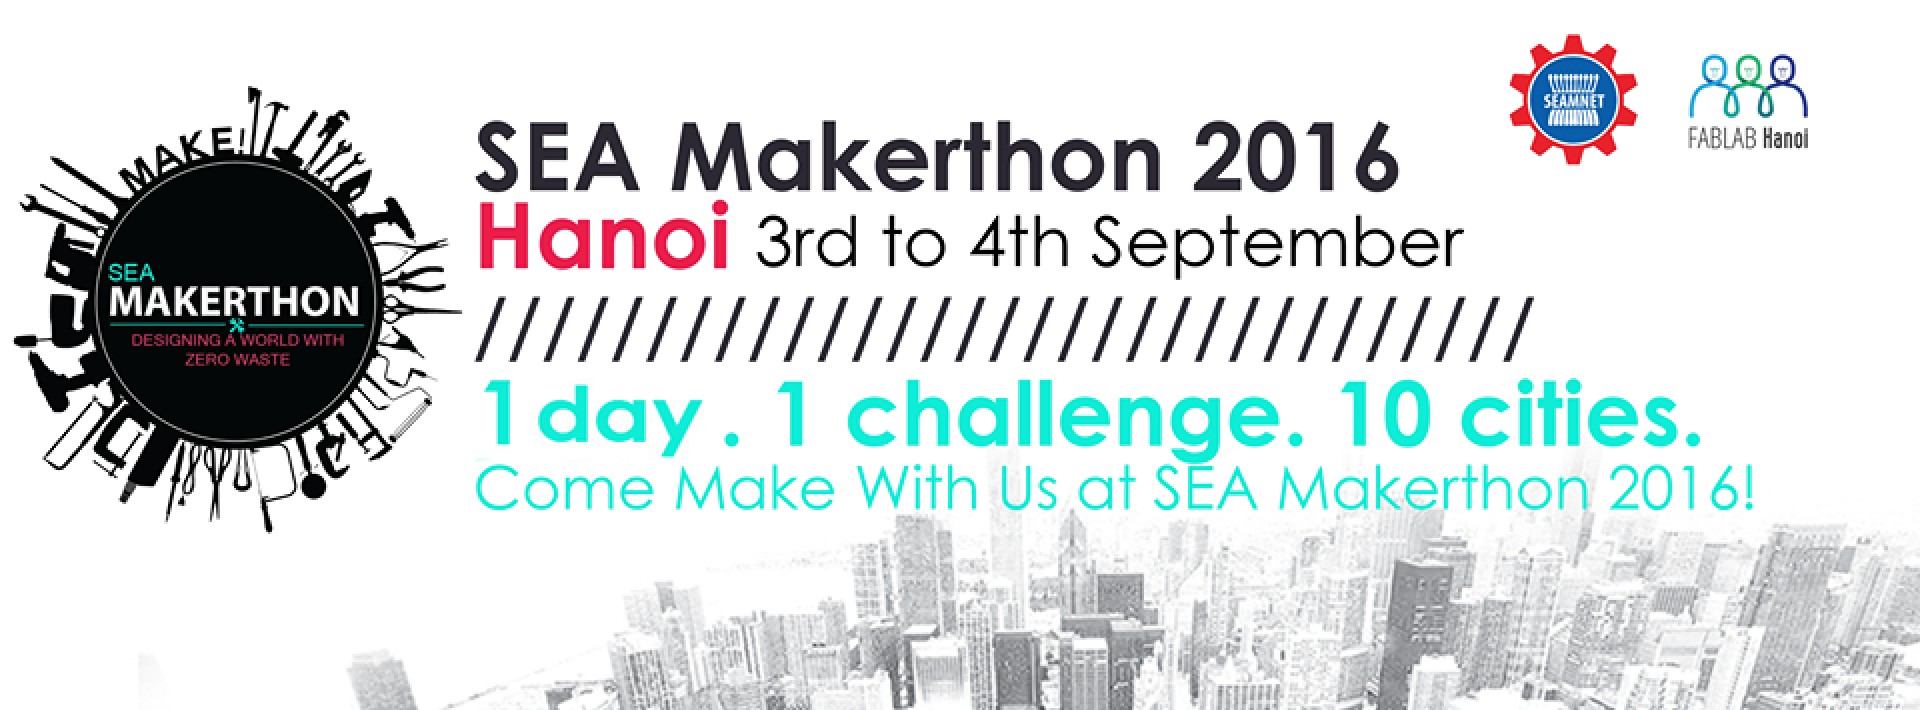 SEA Makerthon Hanoi 2016 - Design a world with zero waste